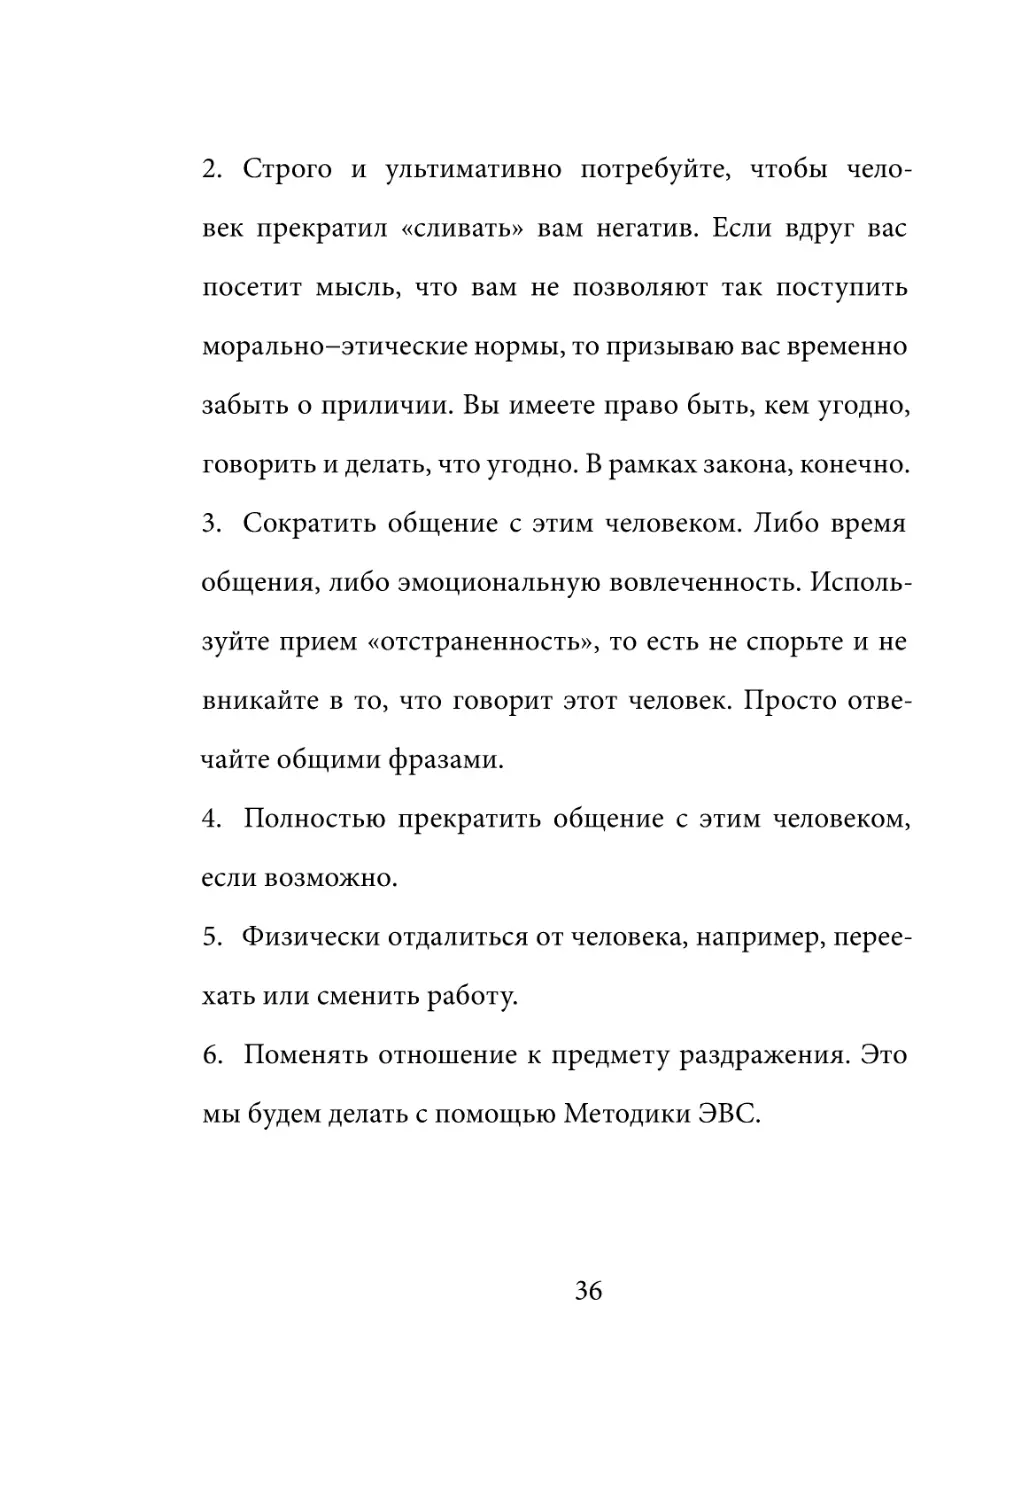 Sergey_Filippov_Dnevnik_samorazvitia_Evolyutsia_Vnutrennego_Sostoyania_36.pdf (p.36)